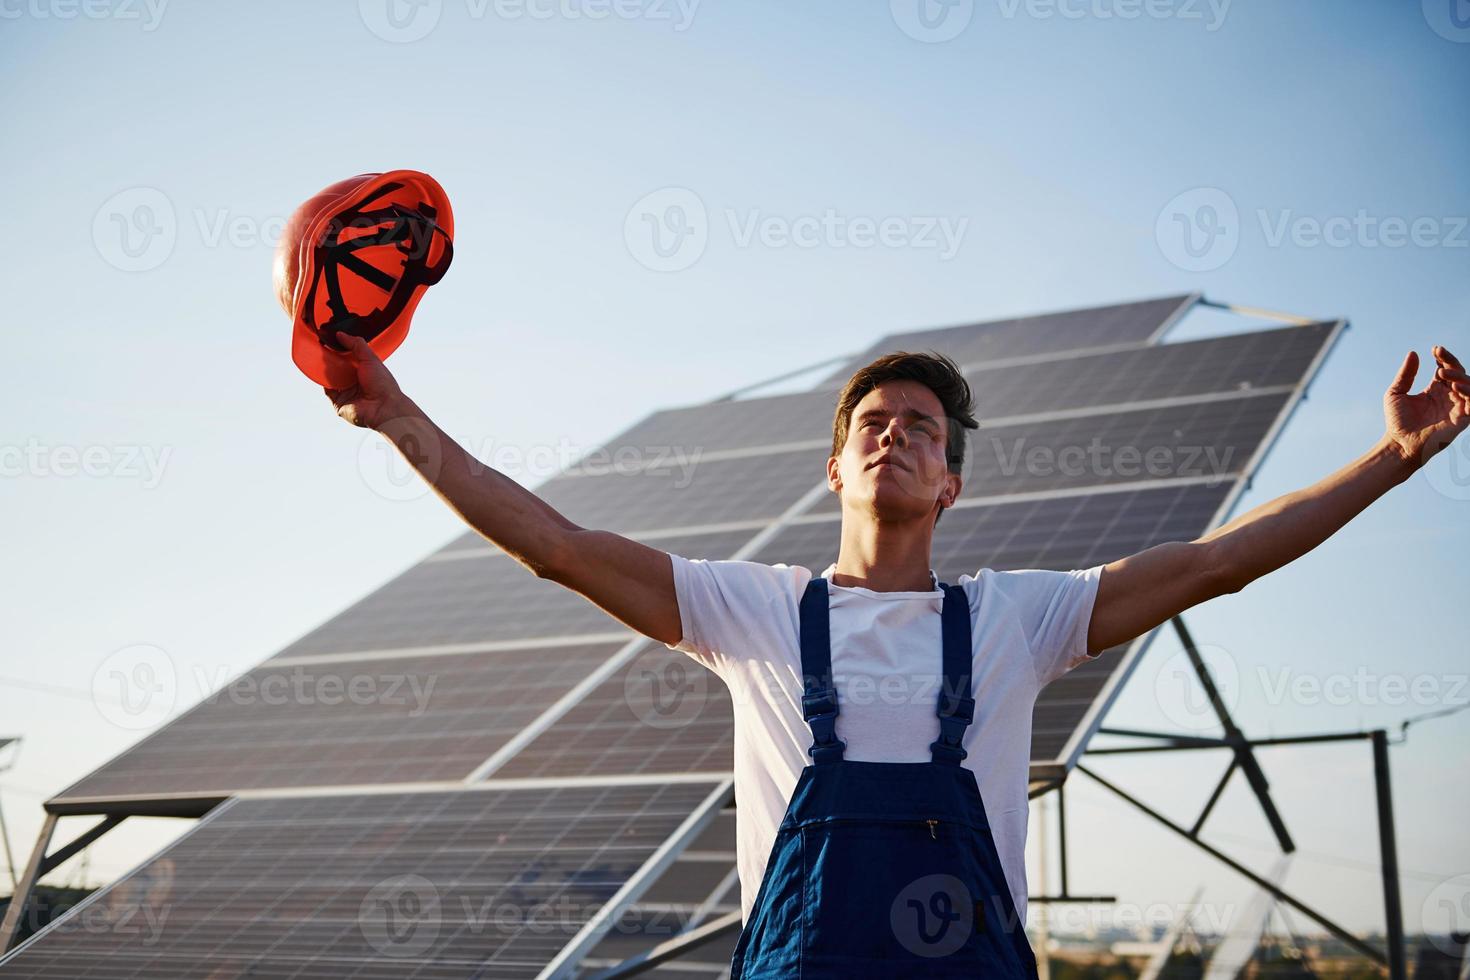 handen verheven omhoog. mannetje arbeider in blauw uniform buitenshuis met zonne- batterijen Bij zonnig dag foto